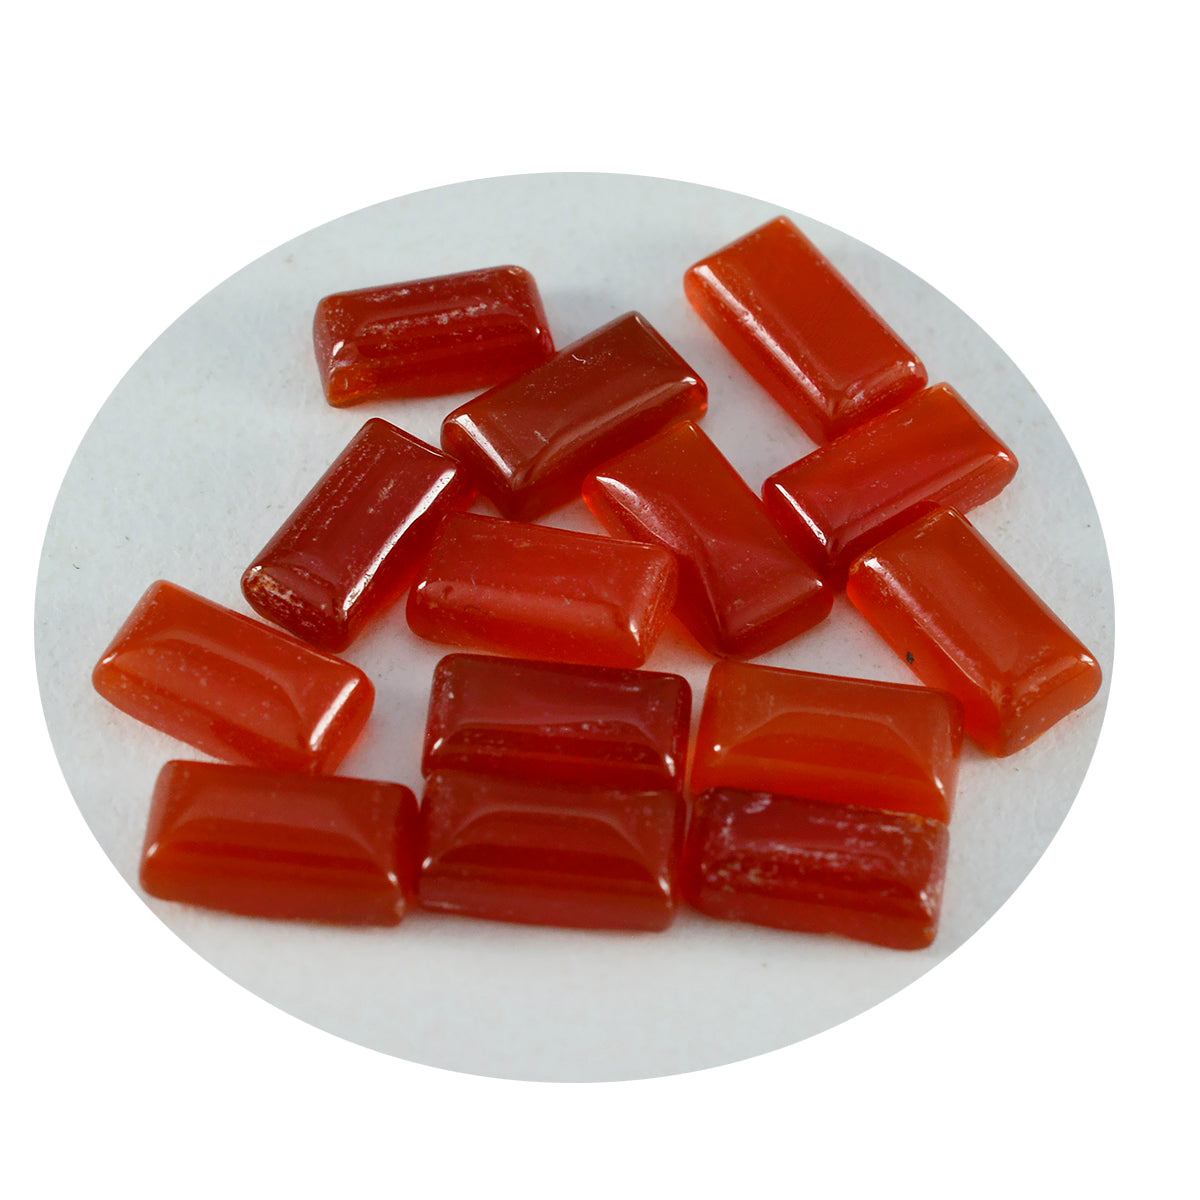 Riyogems 1 pieza cabujón de ónix rojo 6x12 mm forma baguett piedra de excelente calidad